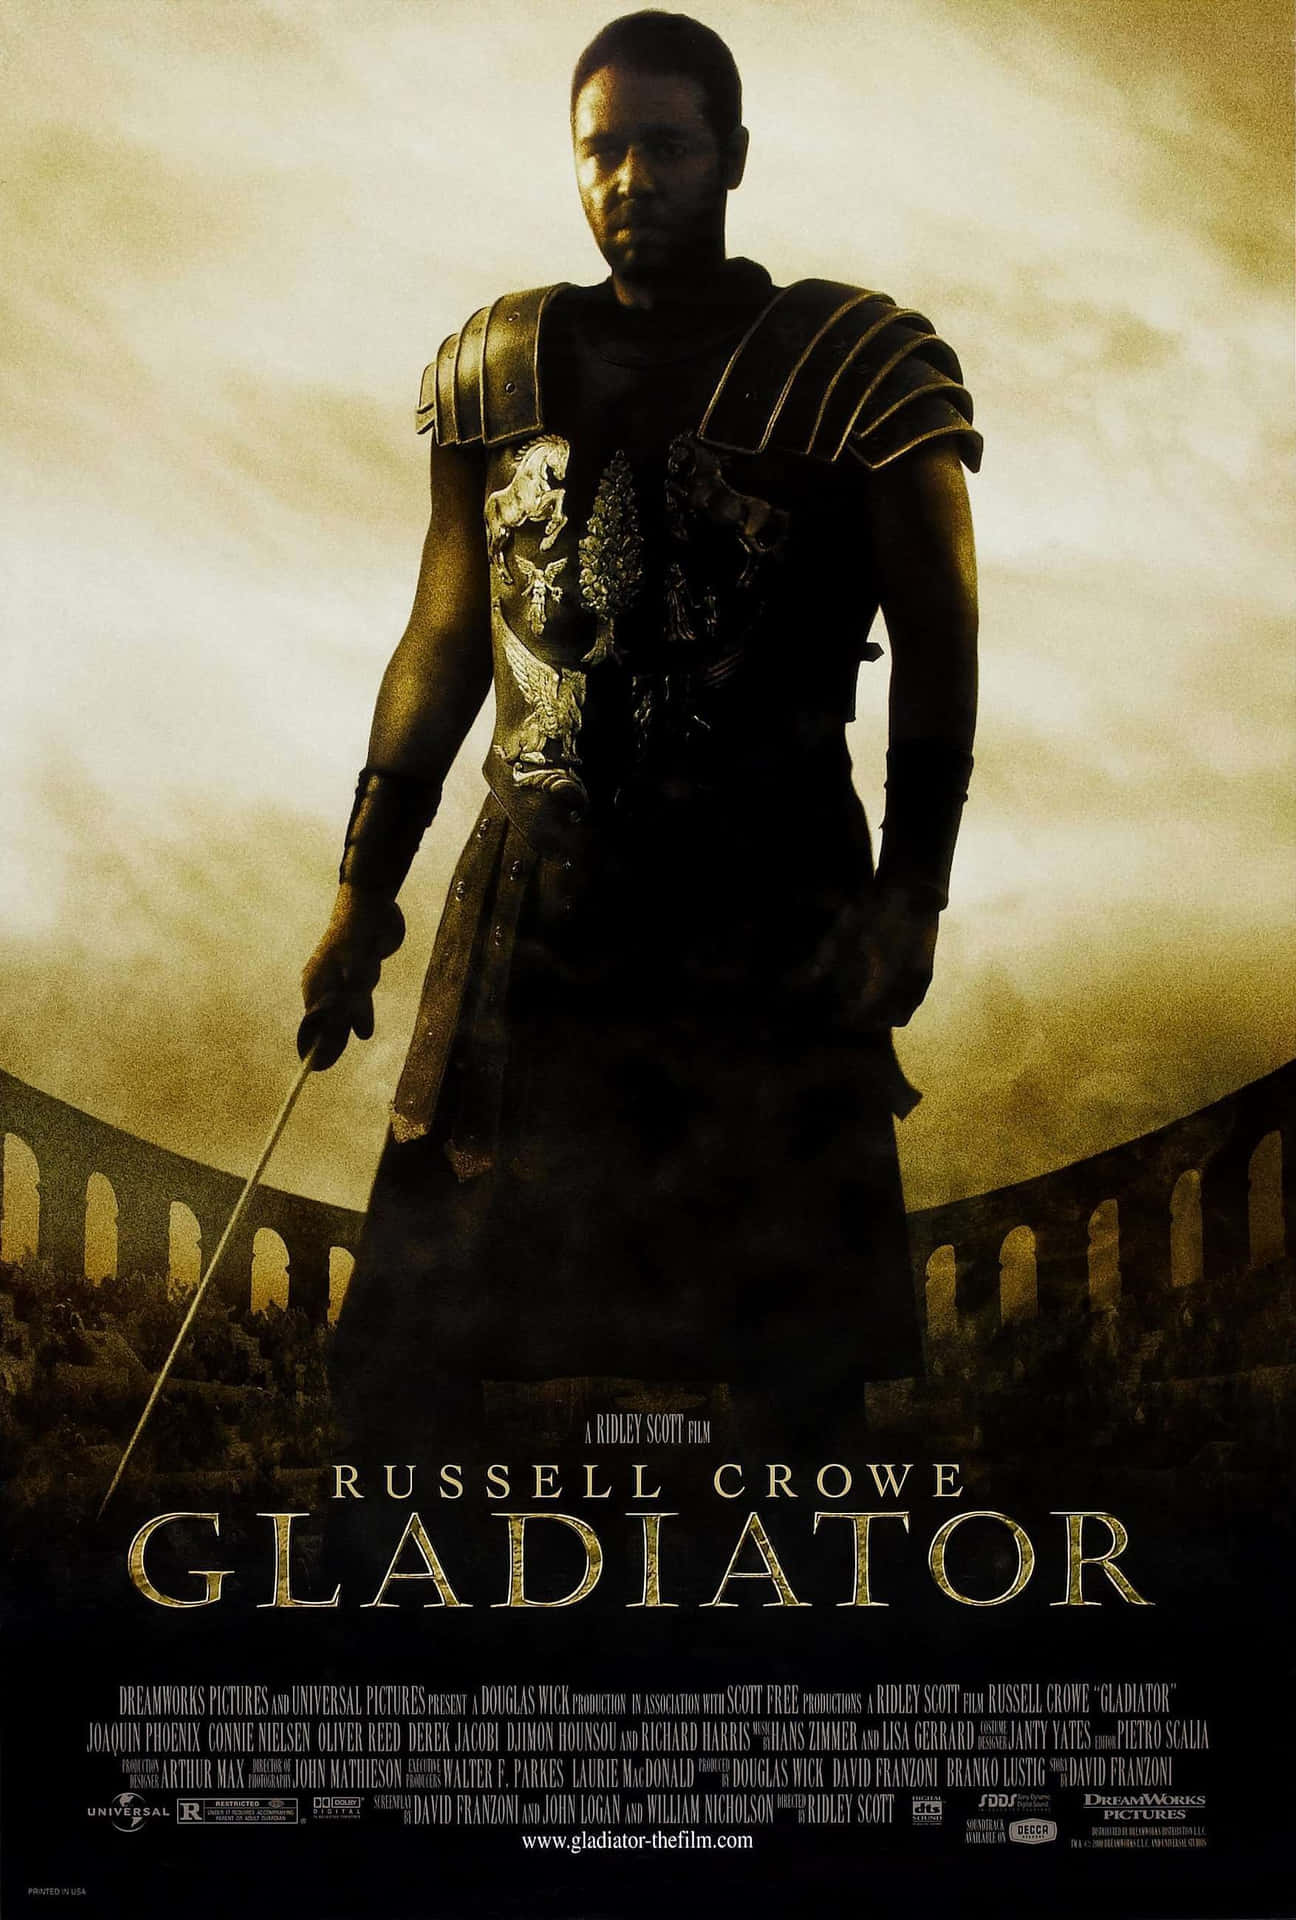 "Bigger than Life: Maximus Decimus Meridius in the epic gladiator film "Gladiator"